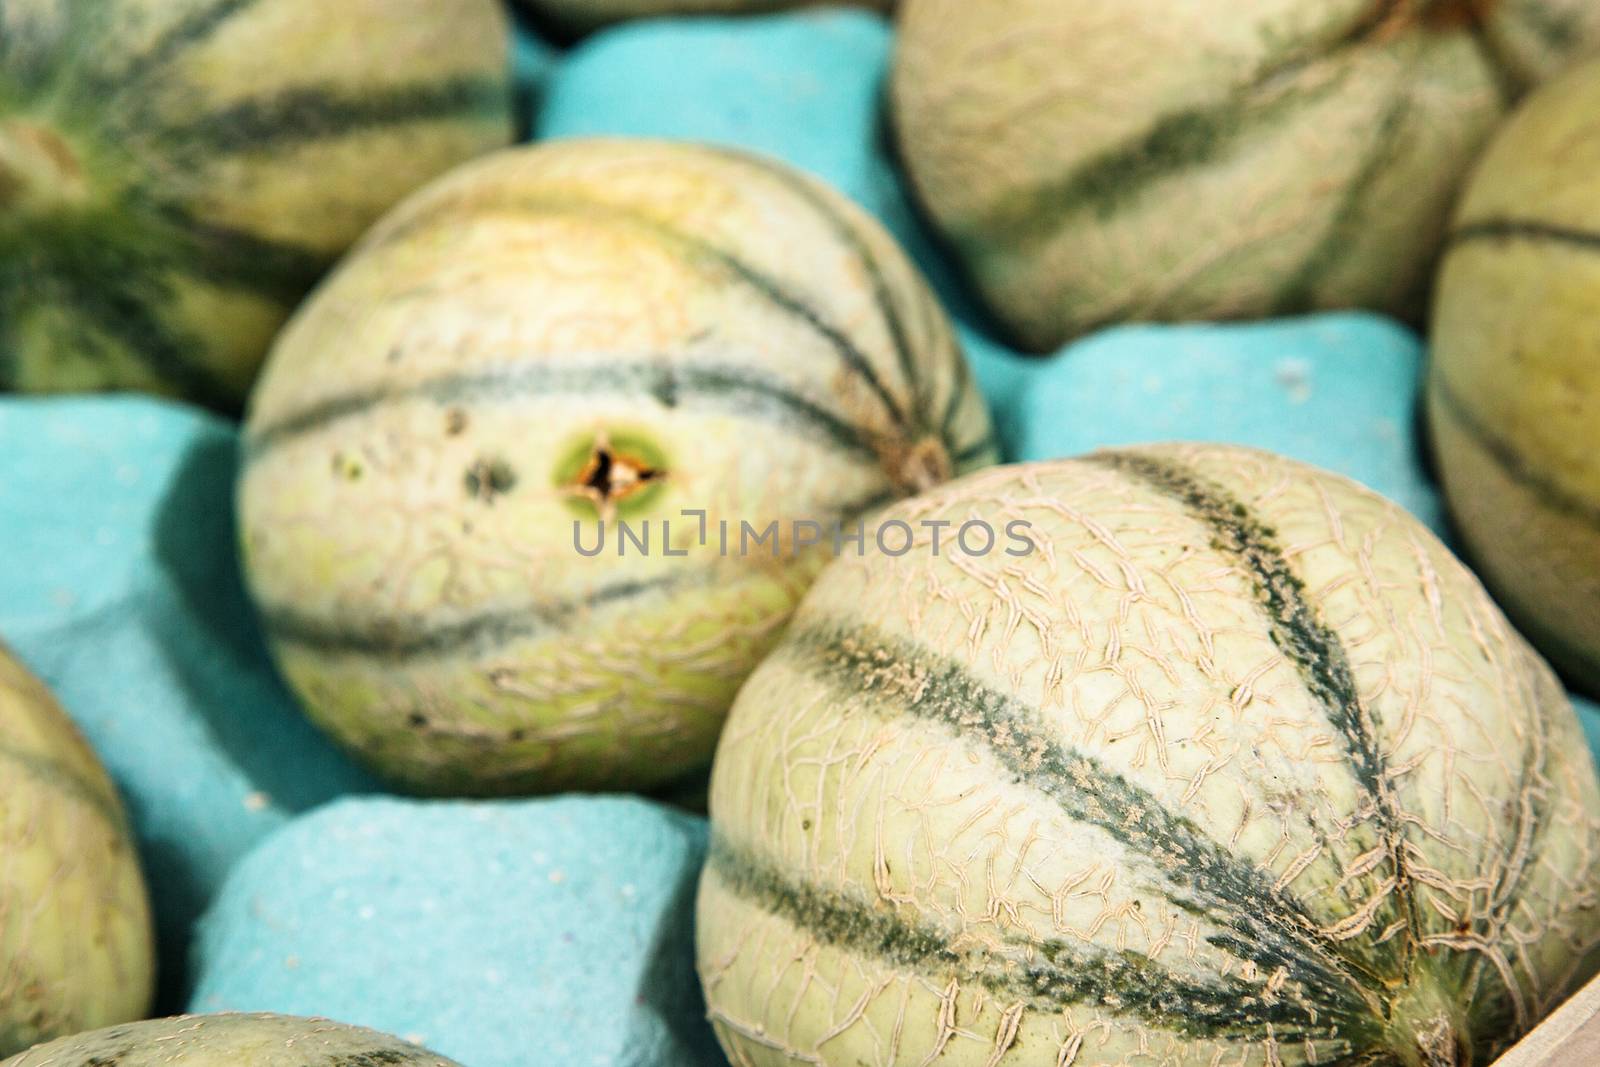 Charentais melons at farmer's market by pixinoo